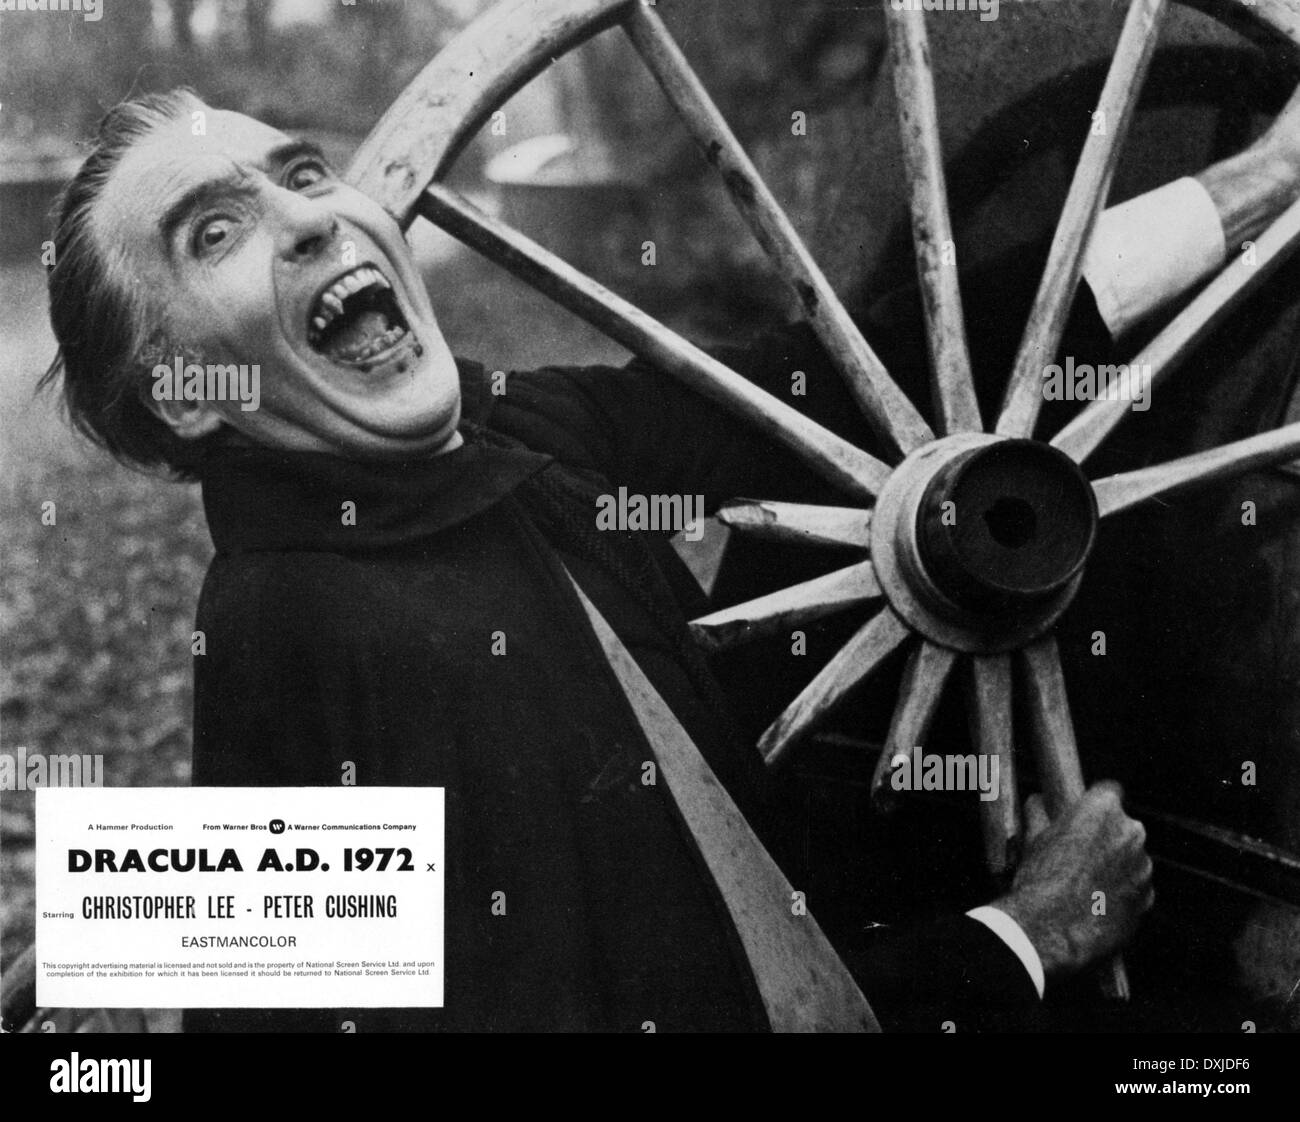 DRACULA AD 1972 Stock Photo